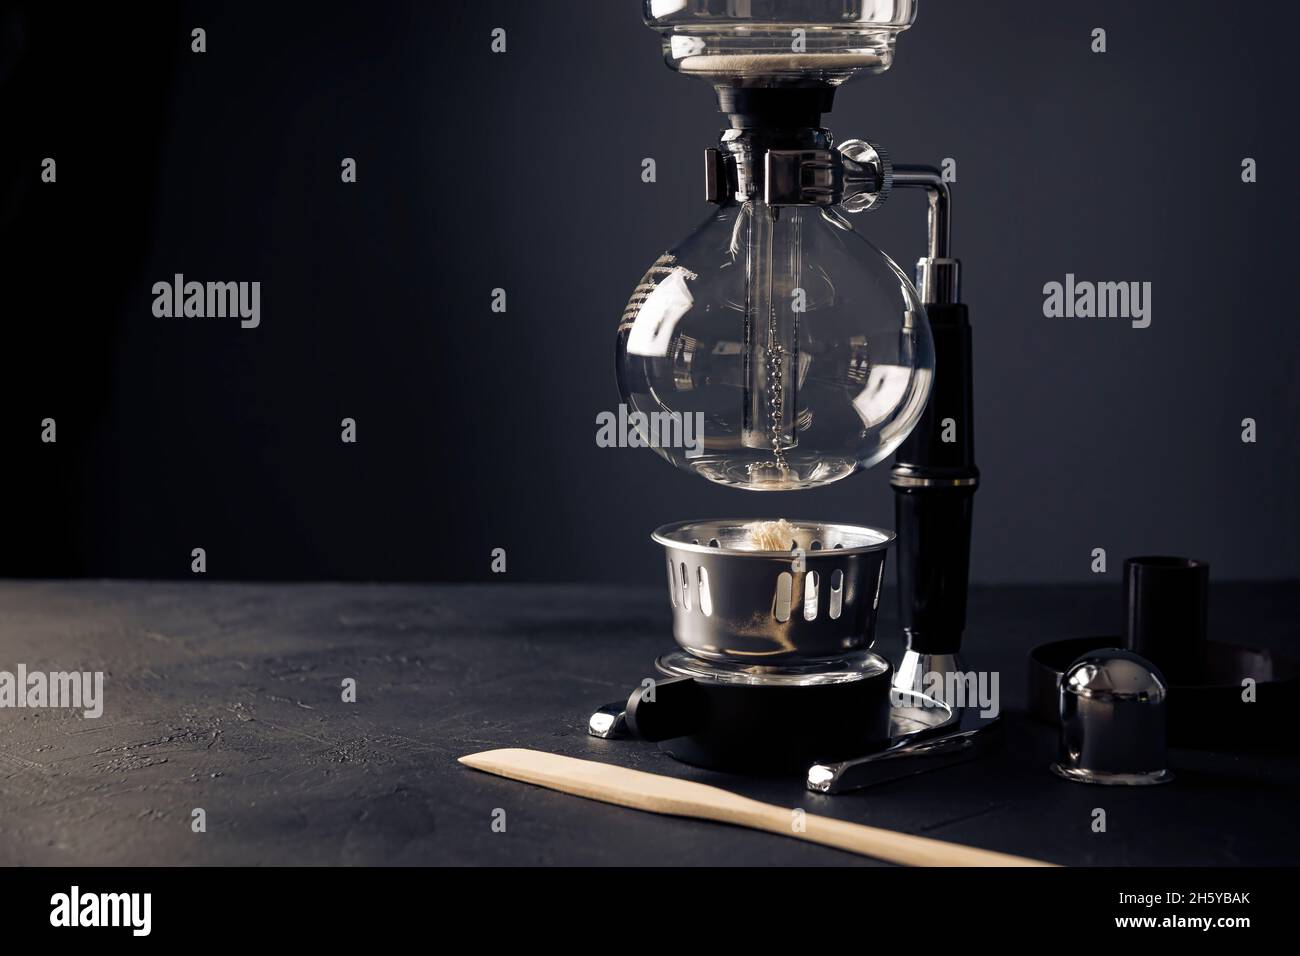 Vakuum-Kaffeemaschine auch bekannt als vac-Topf, Siphon oder Syphon  Kaffeemaschine auf rustikalen schwarzen Stein Tisch. Kopieren Sie Platz für  Ihren Text Stockfotografie - Alamy